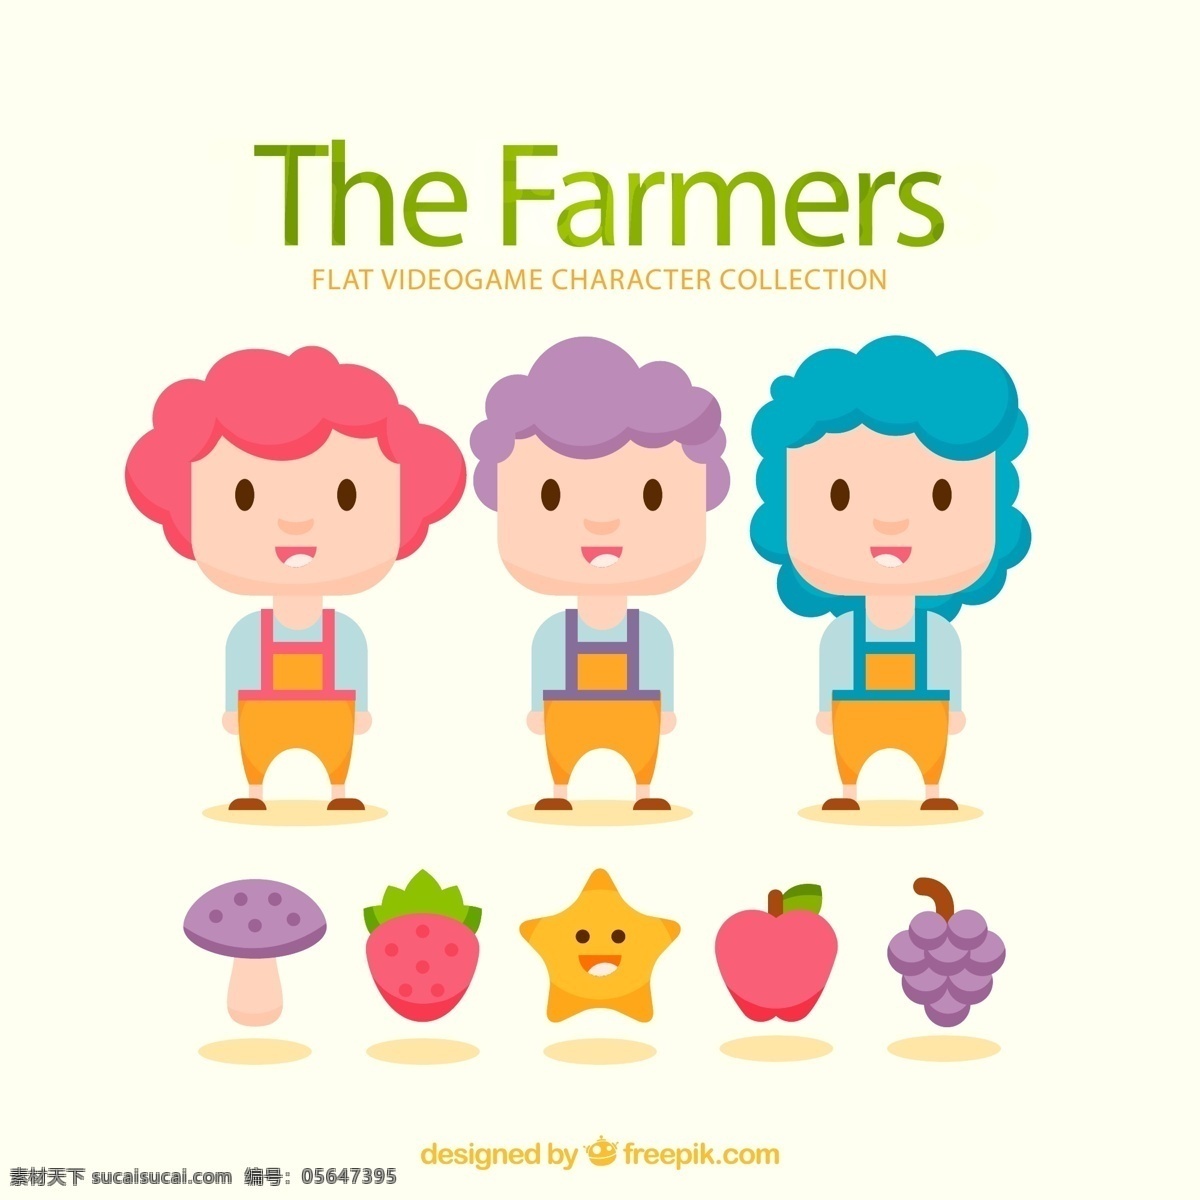 卡通 农场 游戏 人物图片 农夫 草莓 星星 苹果 矢量 高清图片